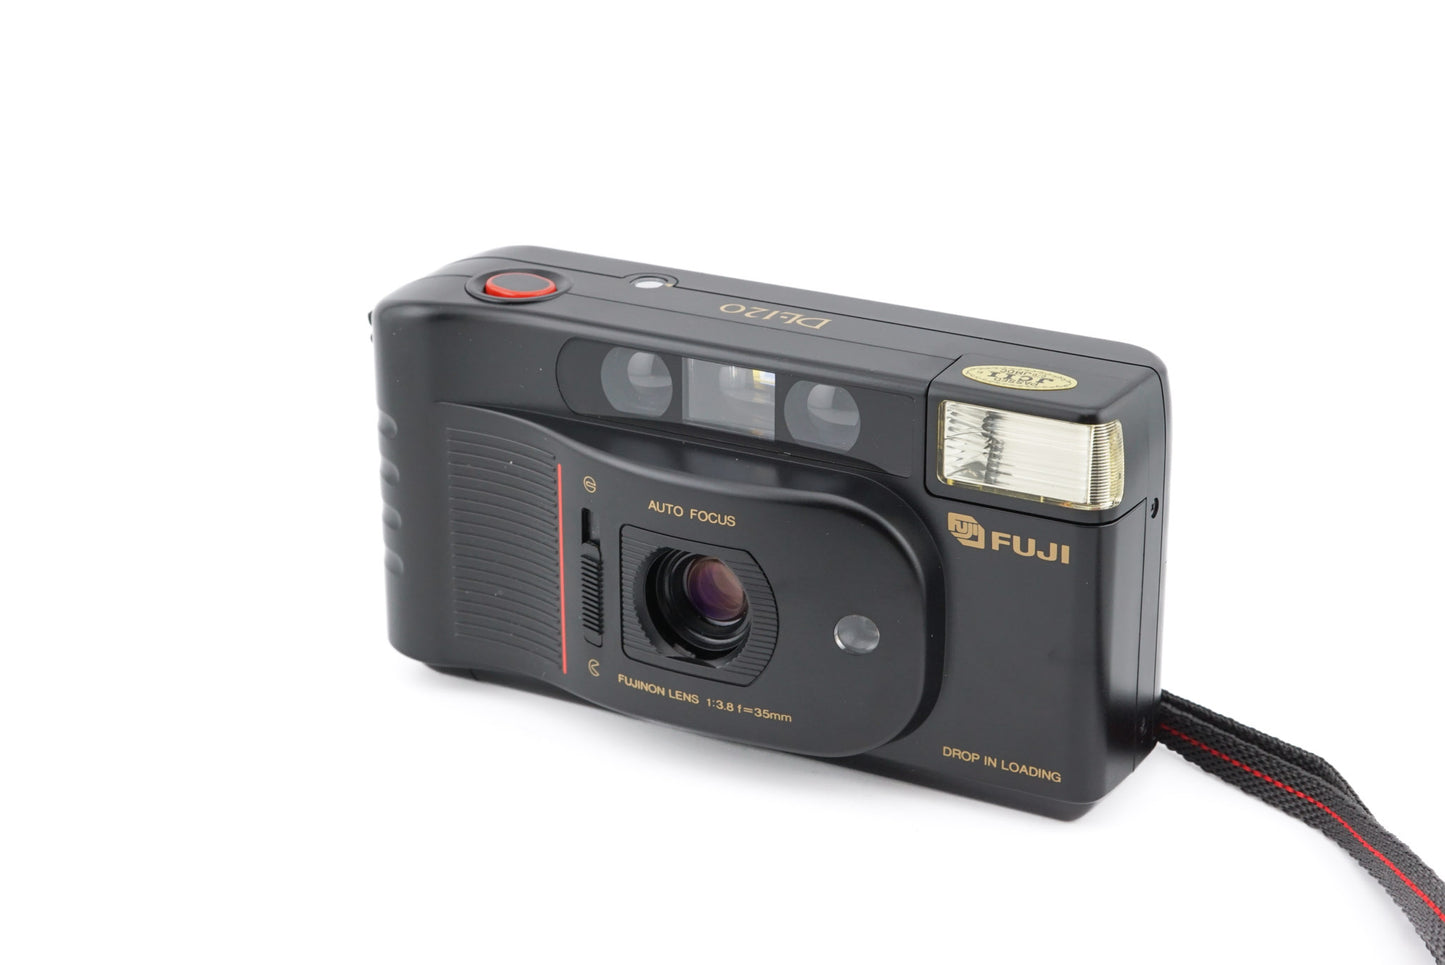 Fuji DL-120 - Camera